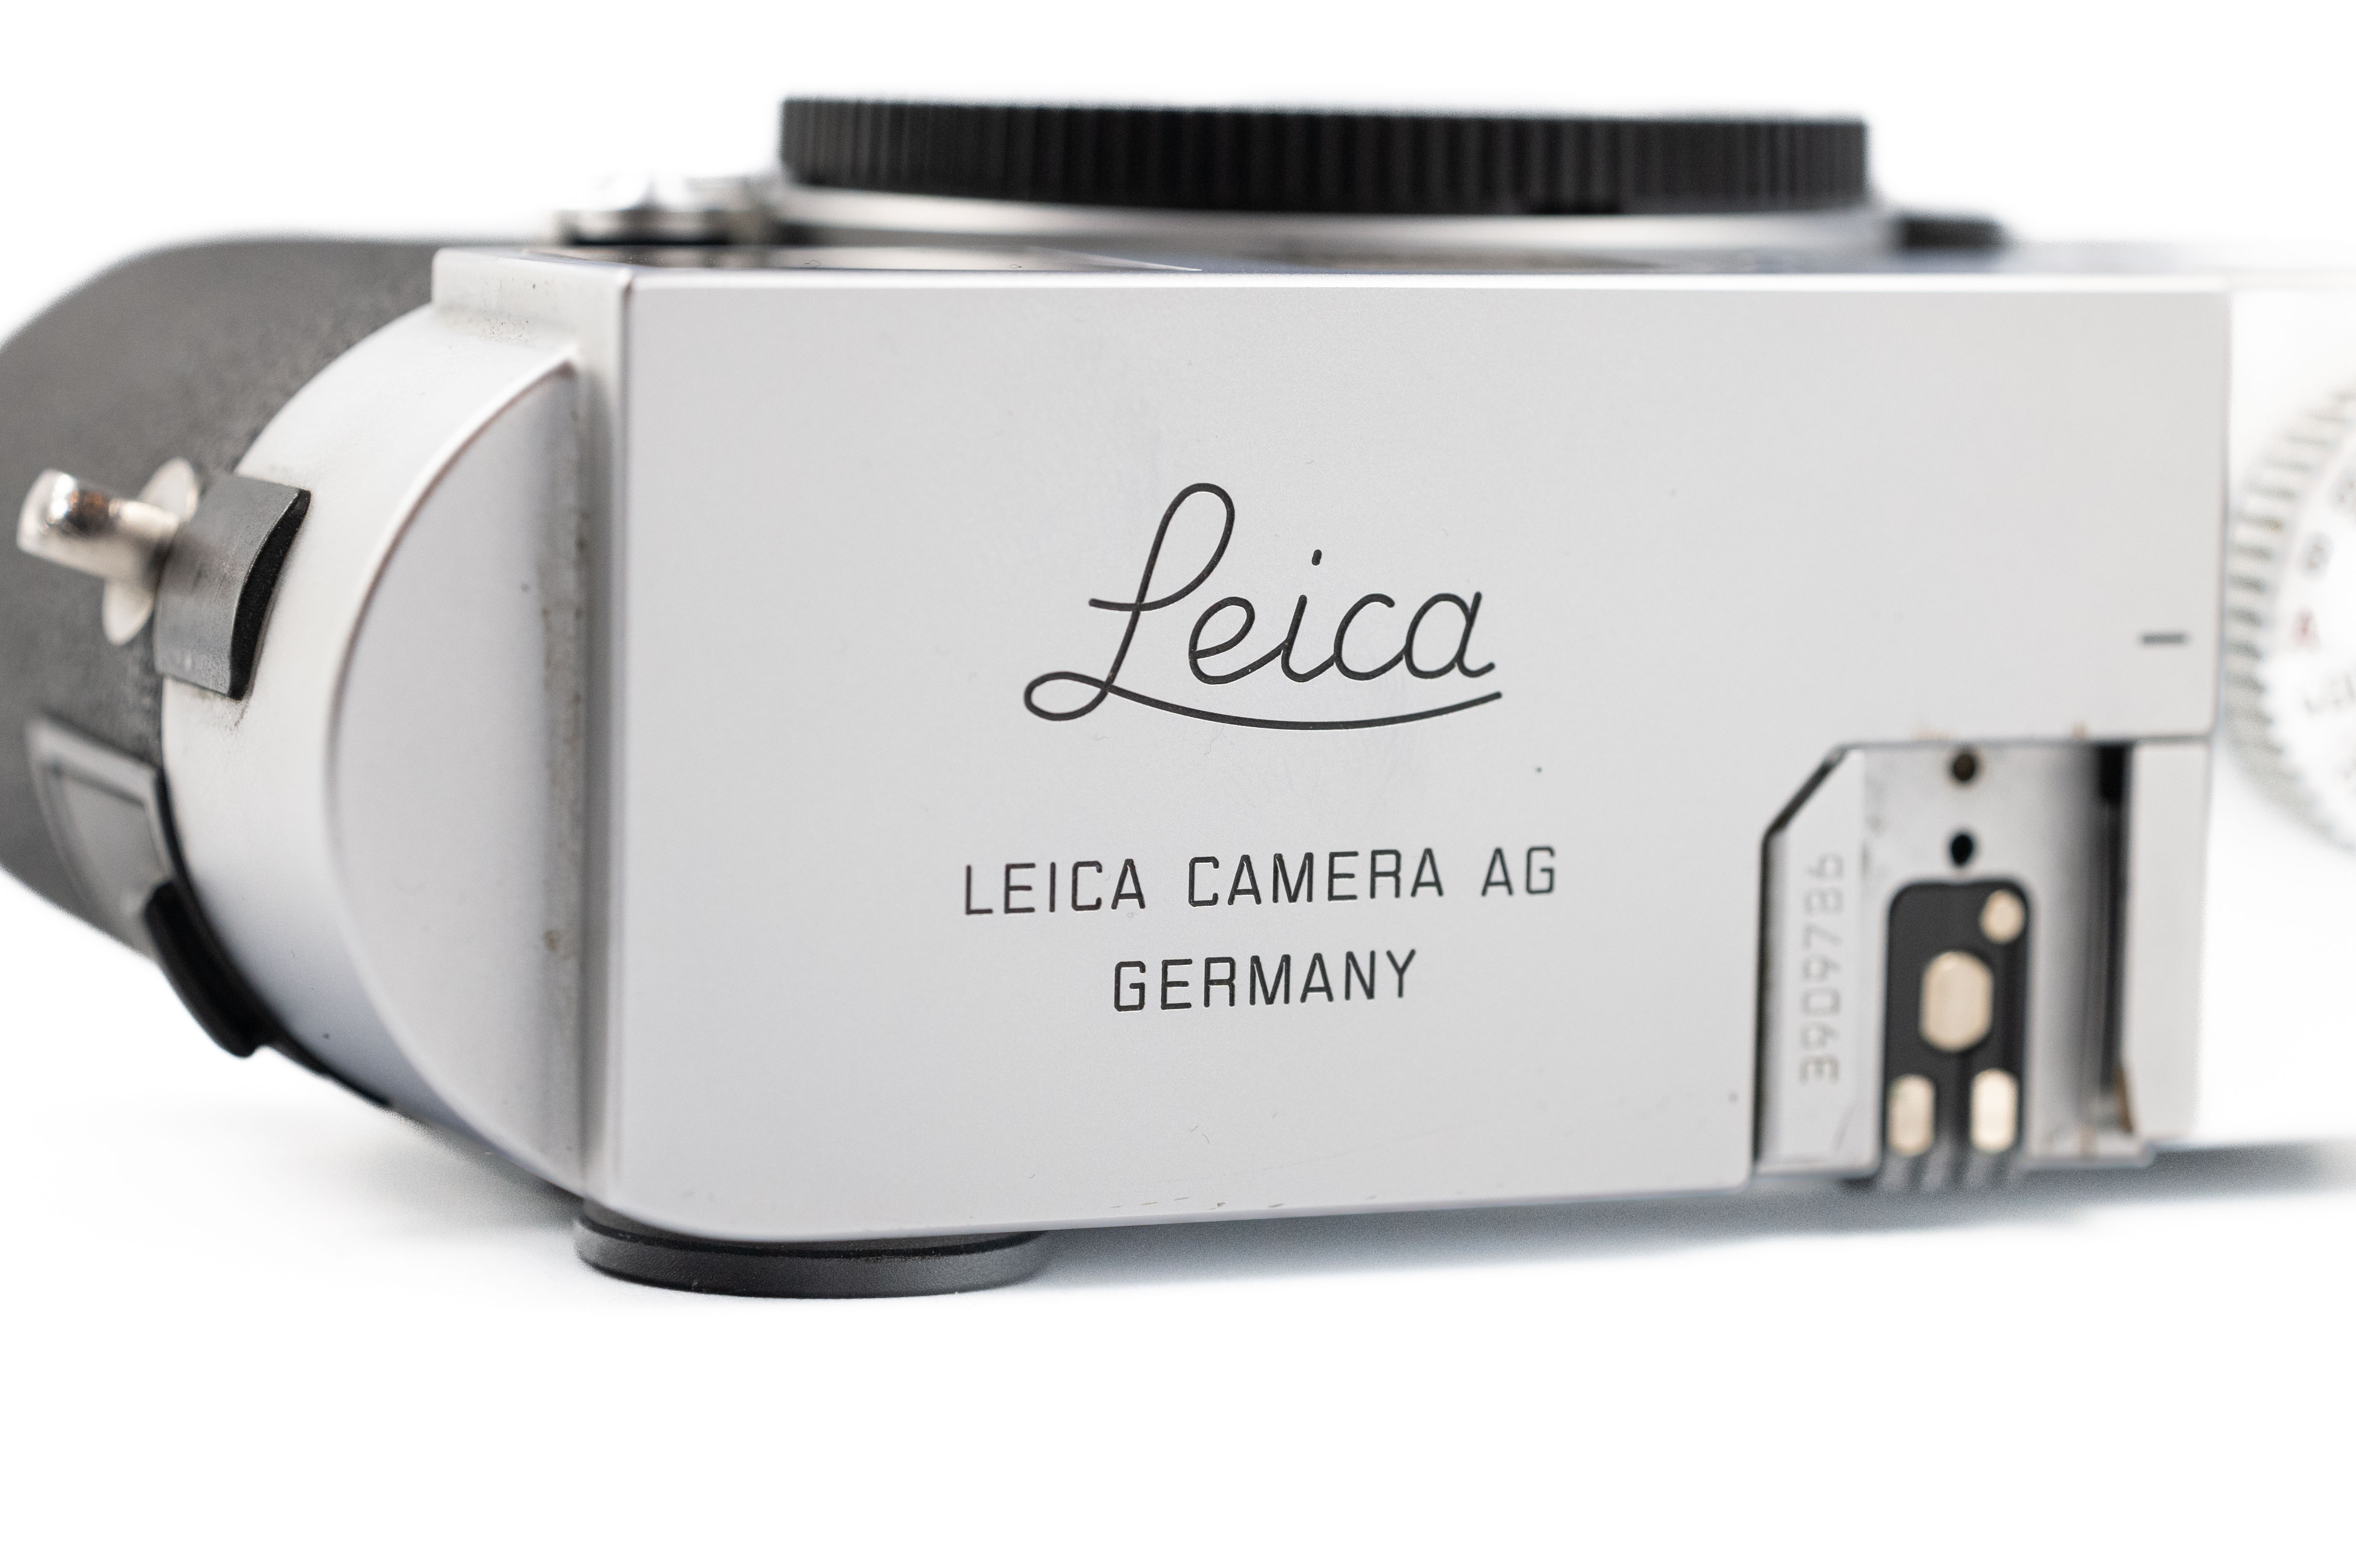 Leica M9-P Silver 10716